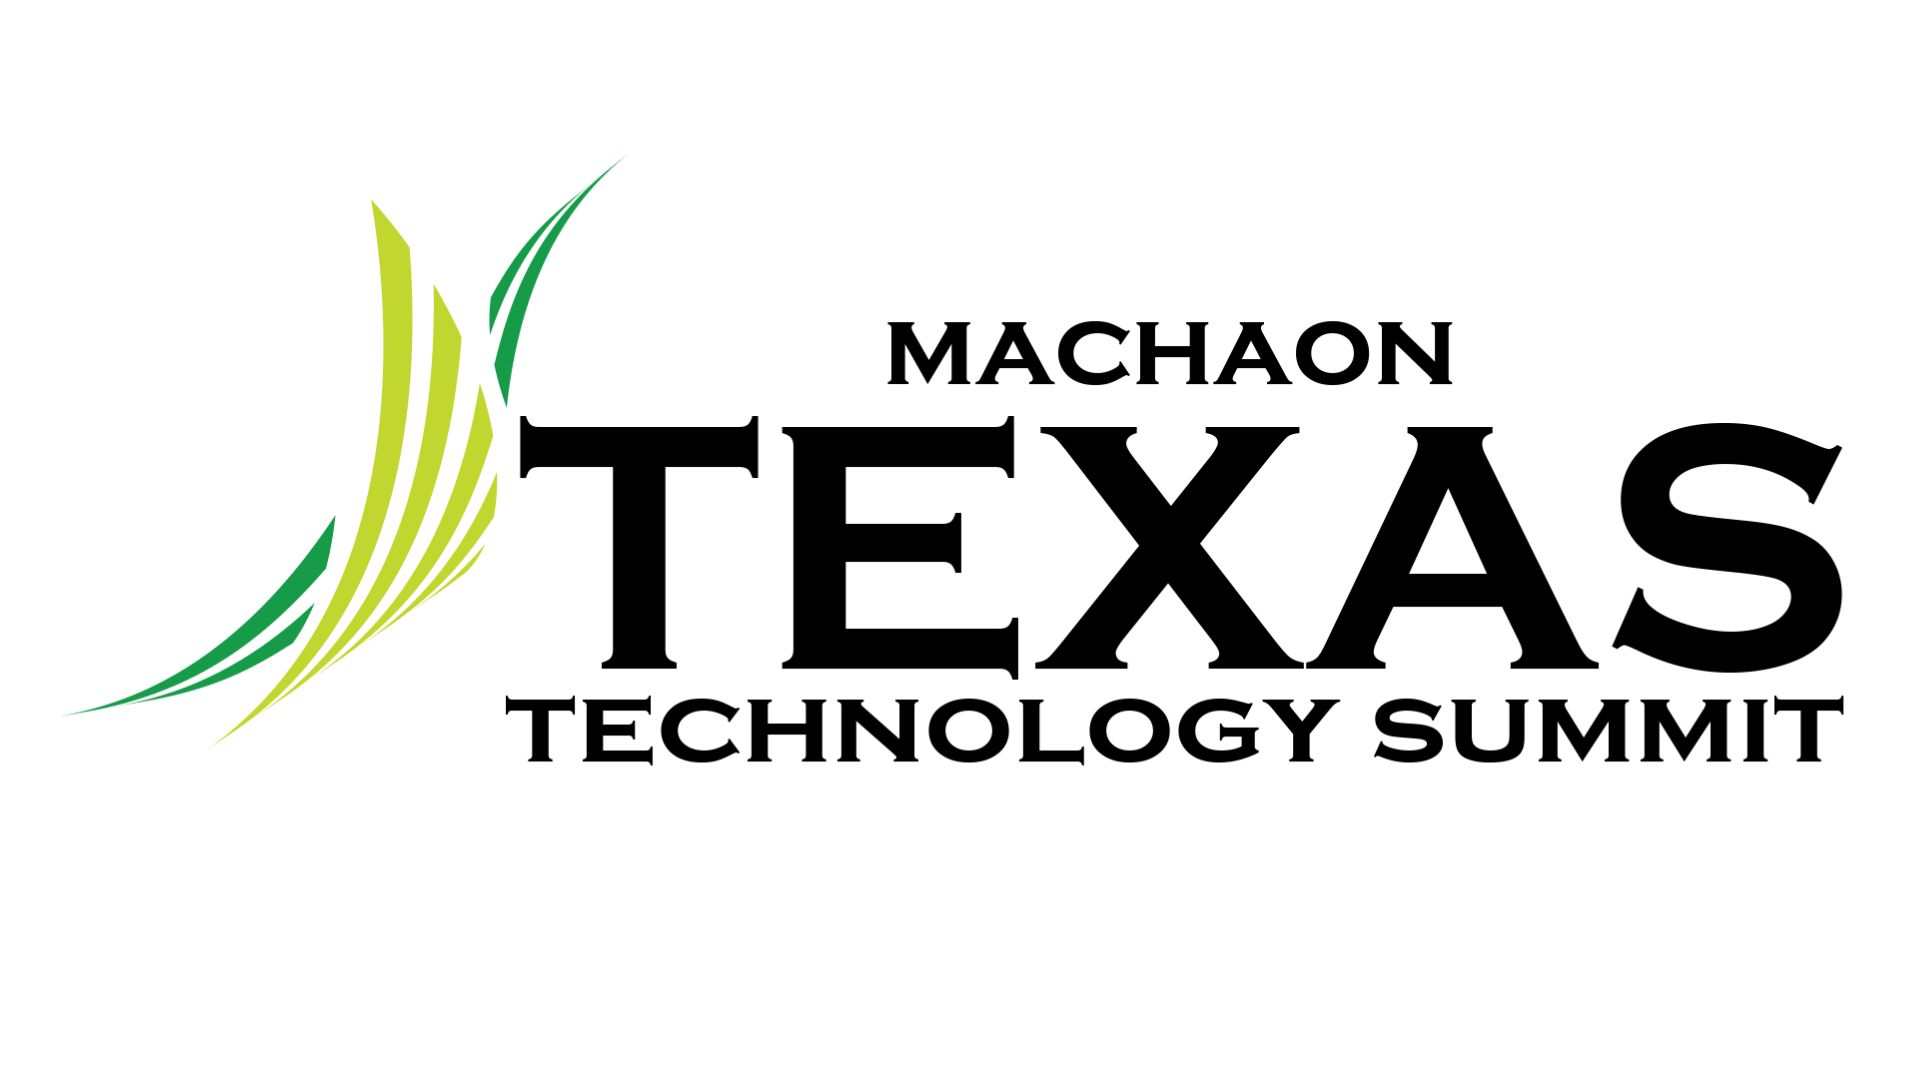 Texas Technology Summit